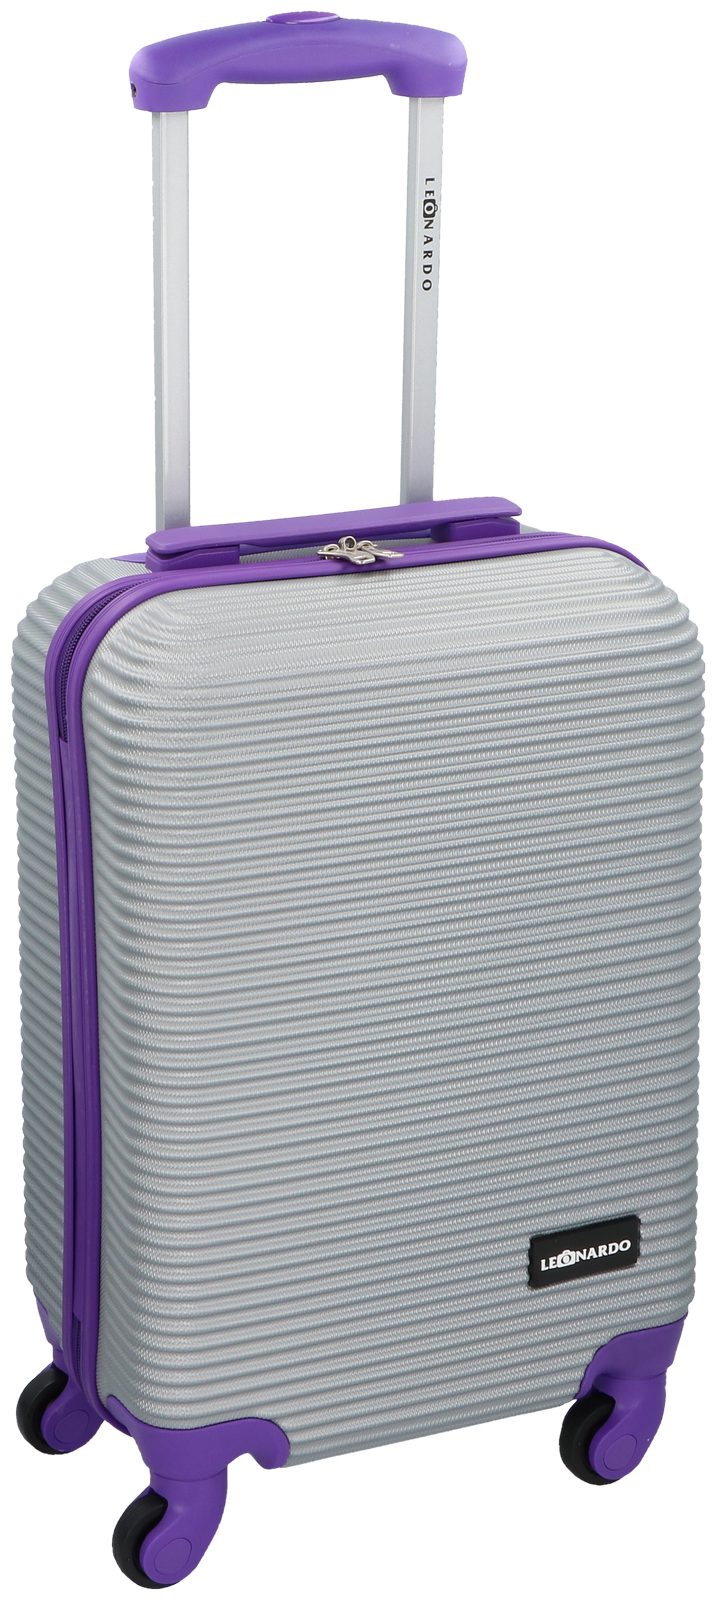 LEONARDO Handgepäck-Trolley, Trolley 31L Koffer Reisekoffer Hartschale  Boardcase Handgepäck online kaufen | OTTO